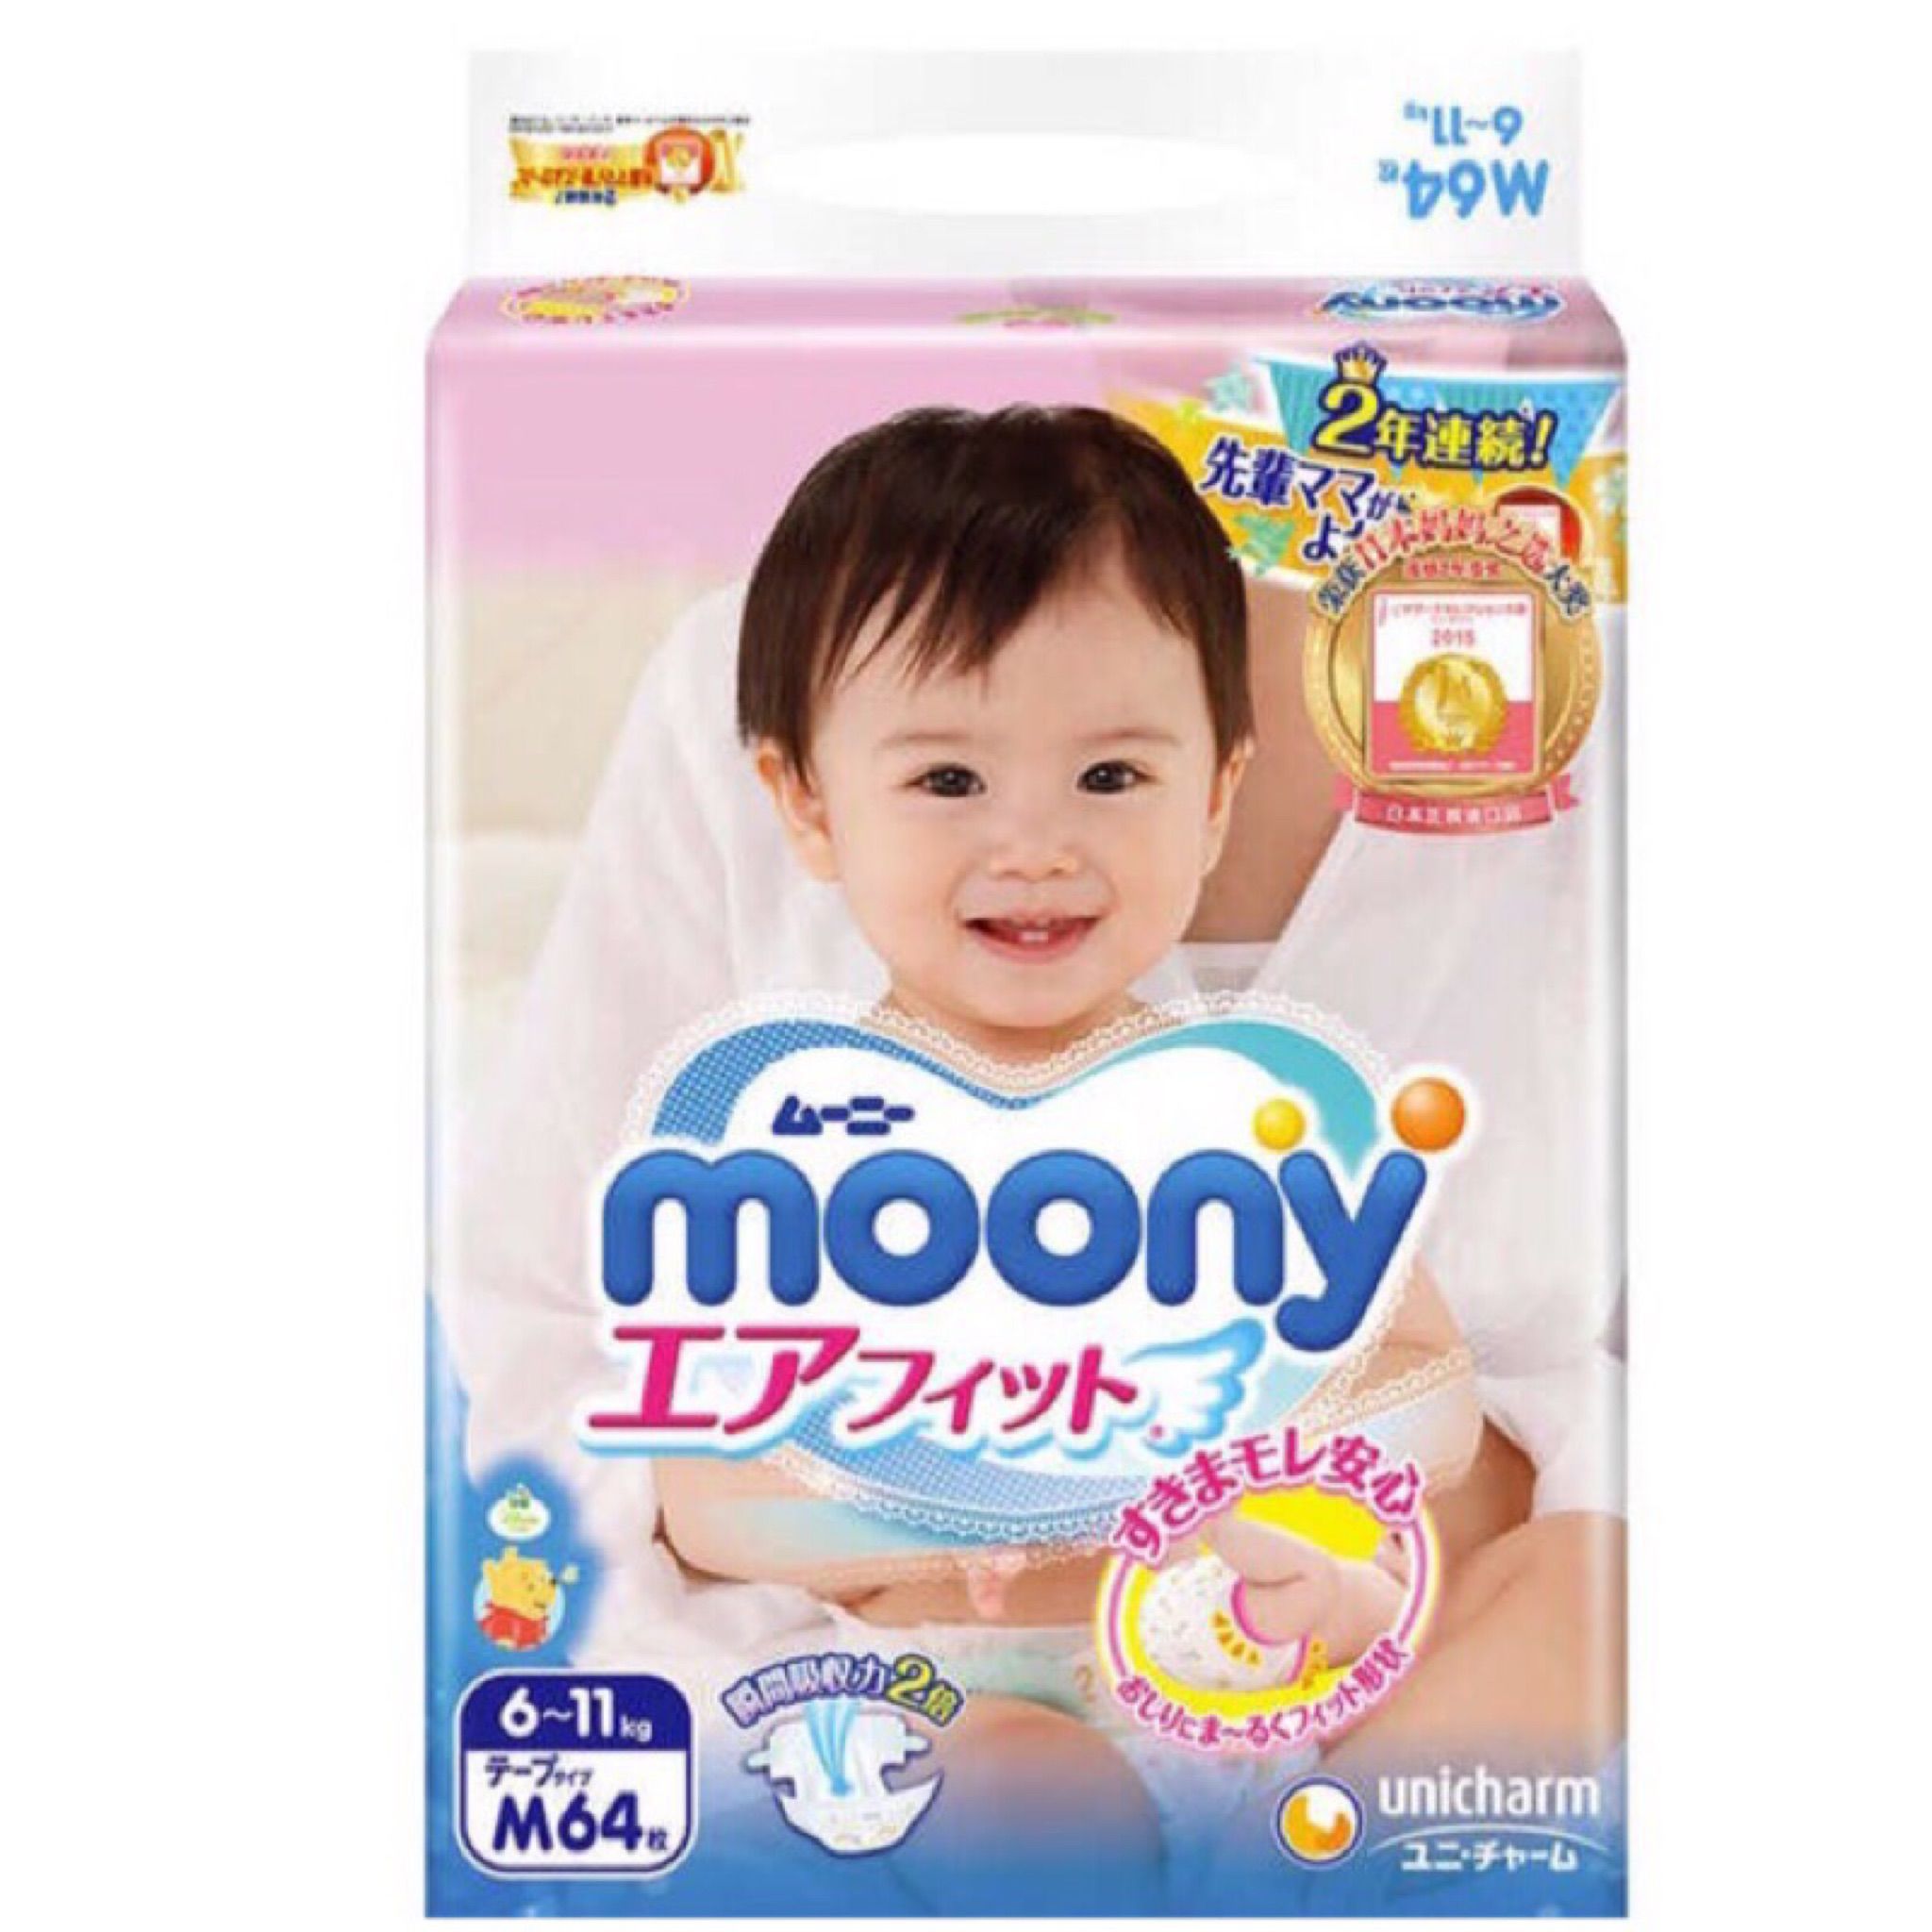 日本境內 moony 紙尿褲 M號